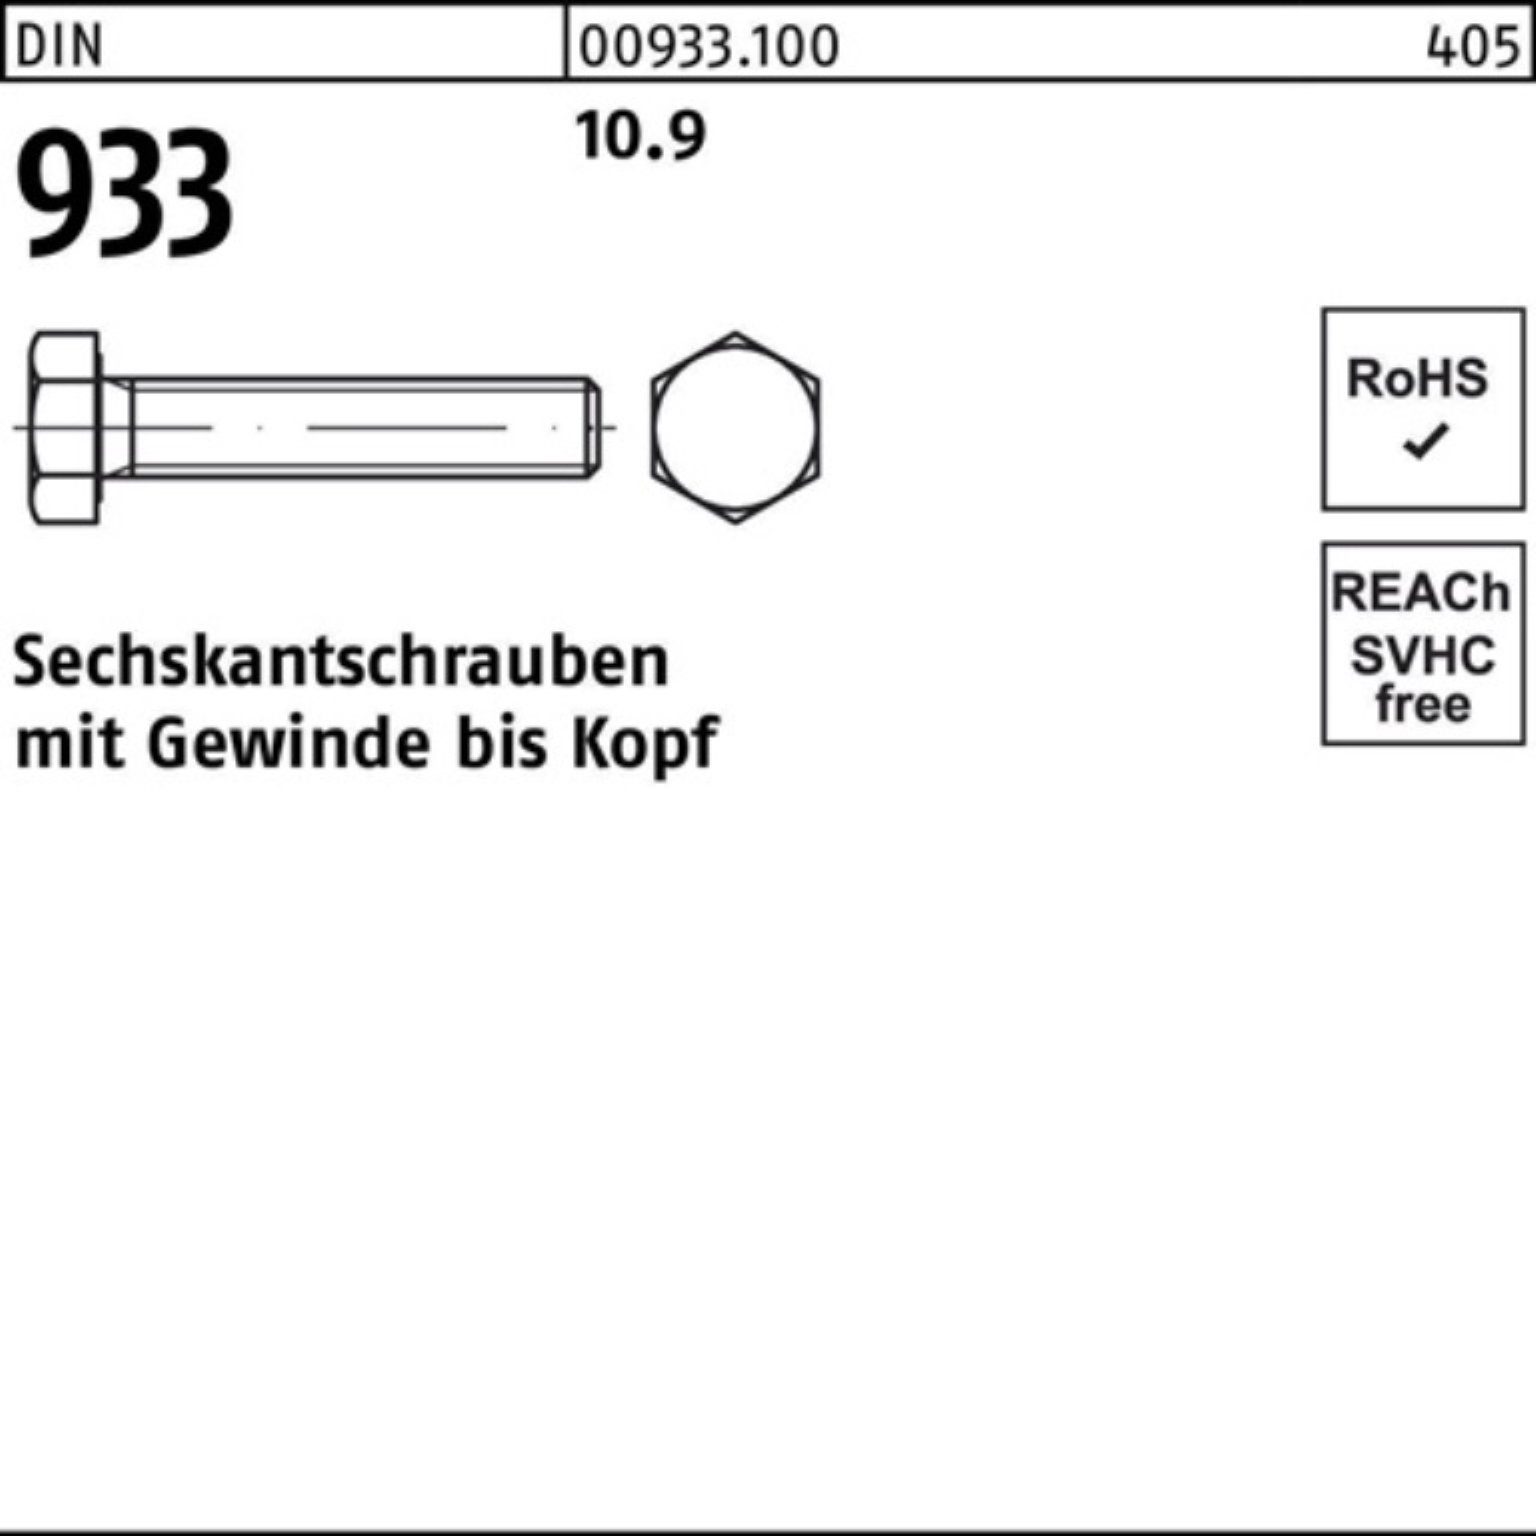 Pack 10.9 Sechskantschraube DIN Stück 933 Sechskantschraube Reyher 933 100er 180 1 DIN VG M30x